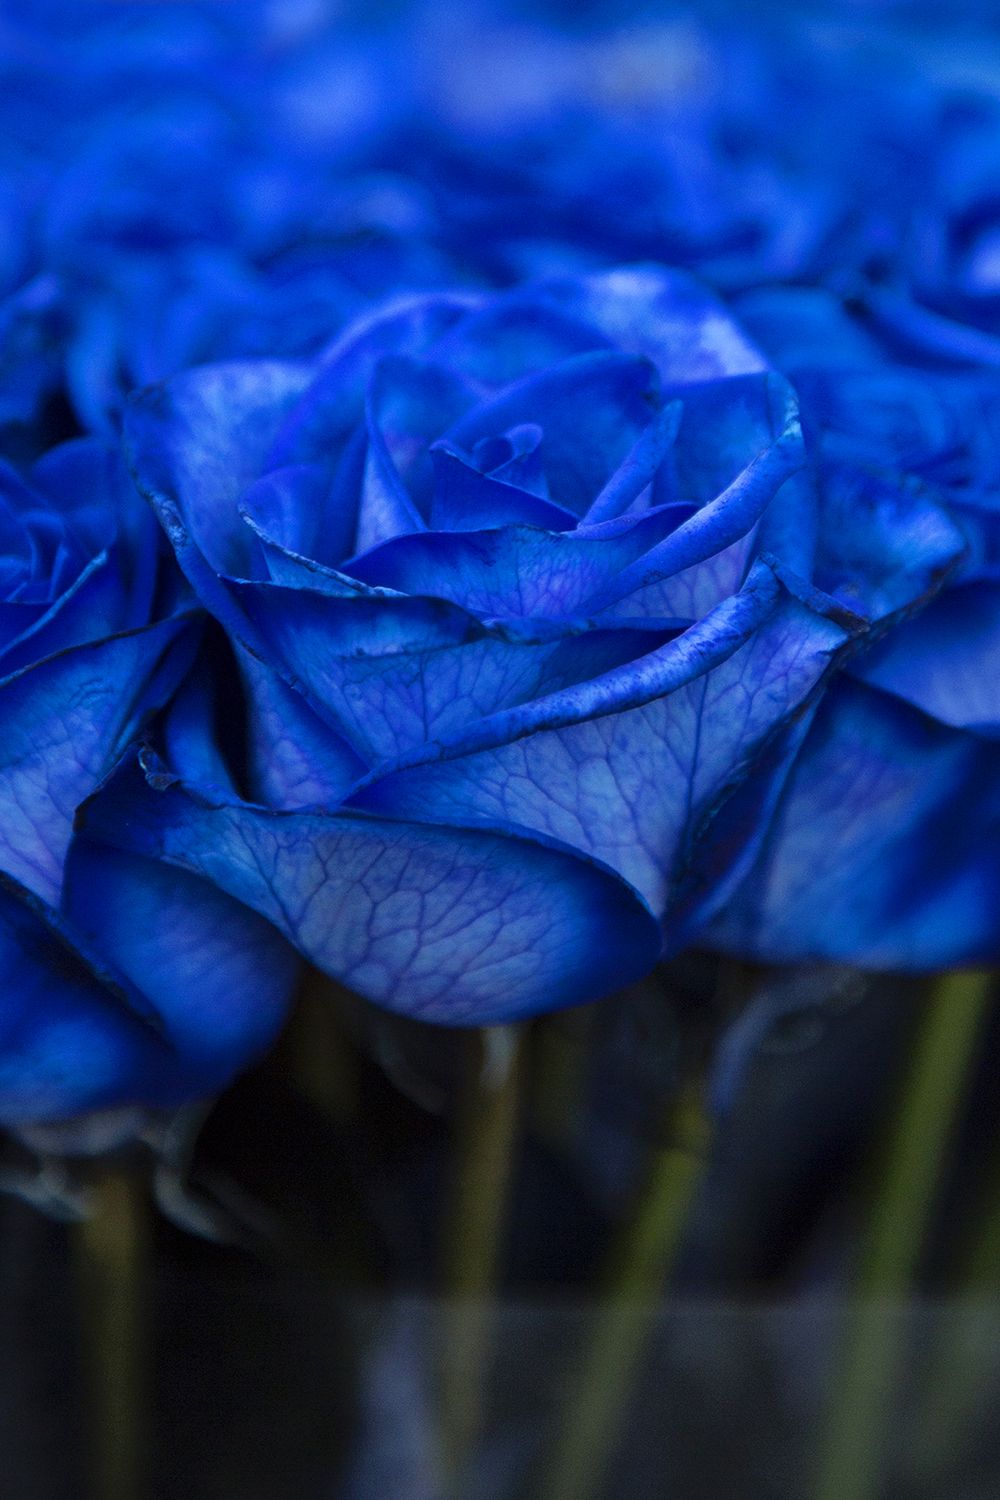 Rose Vendela Blue - The Blue Rose - on Thursd.